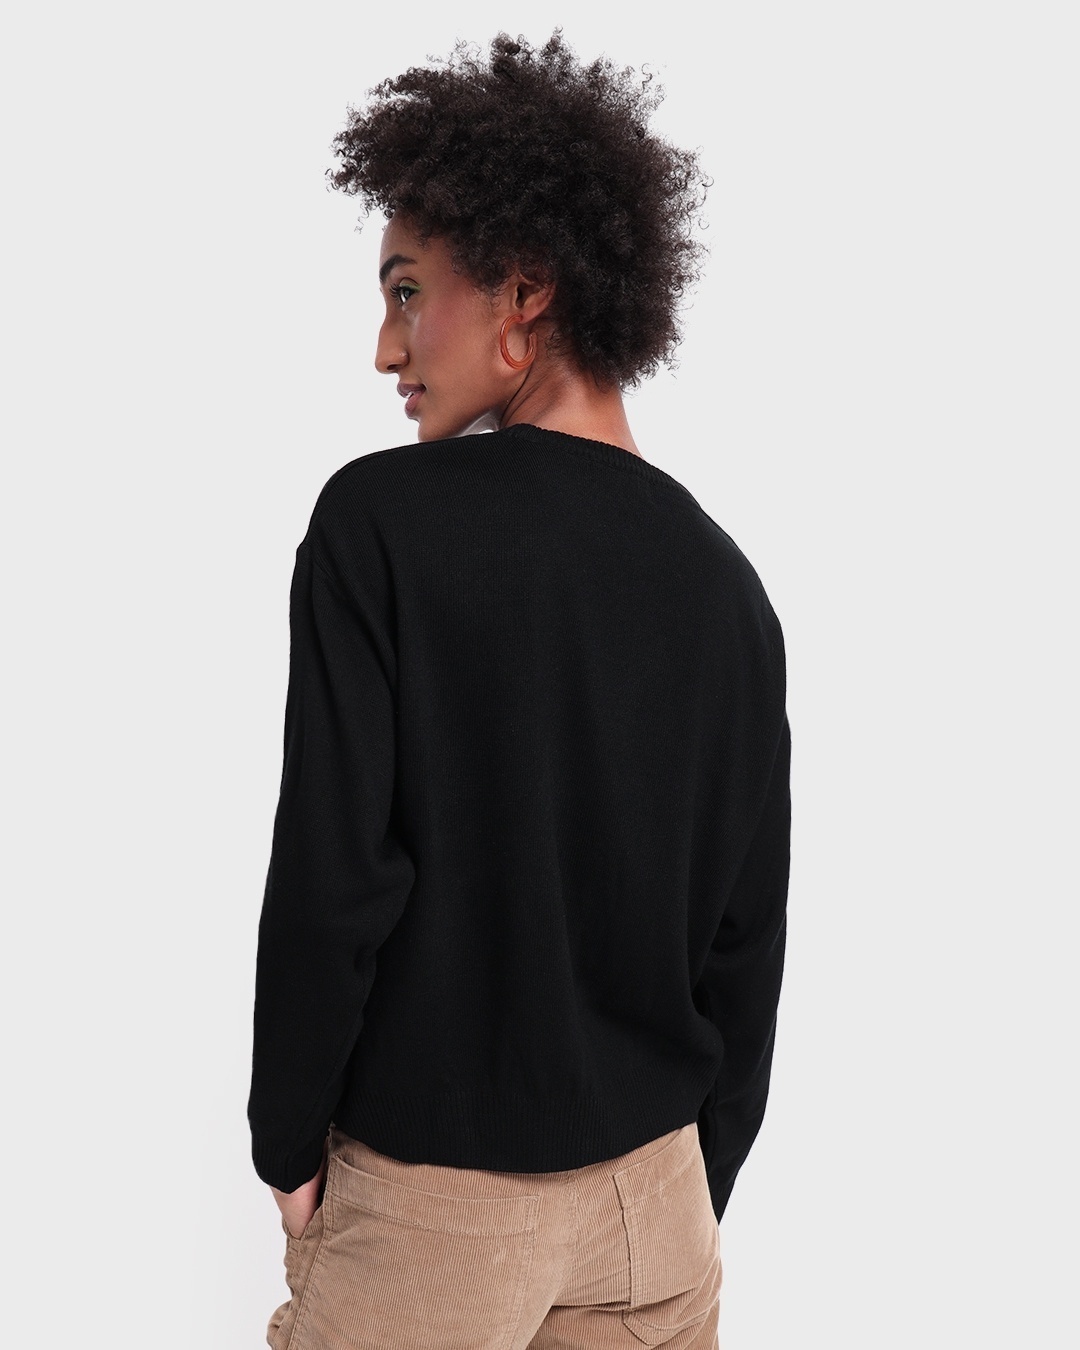 Buy Women's Black Sweater for Women black Online at Bewakoof